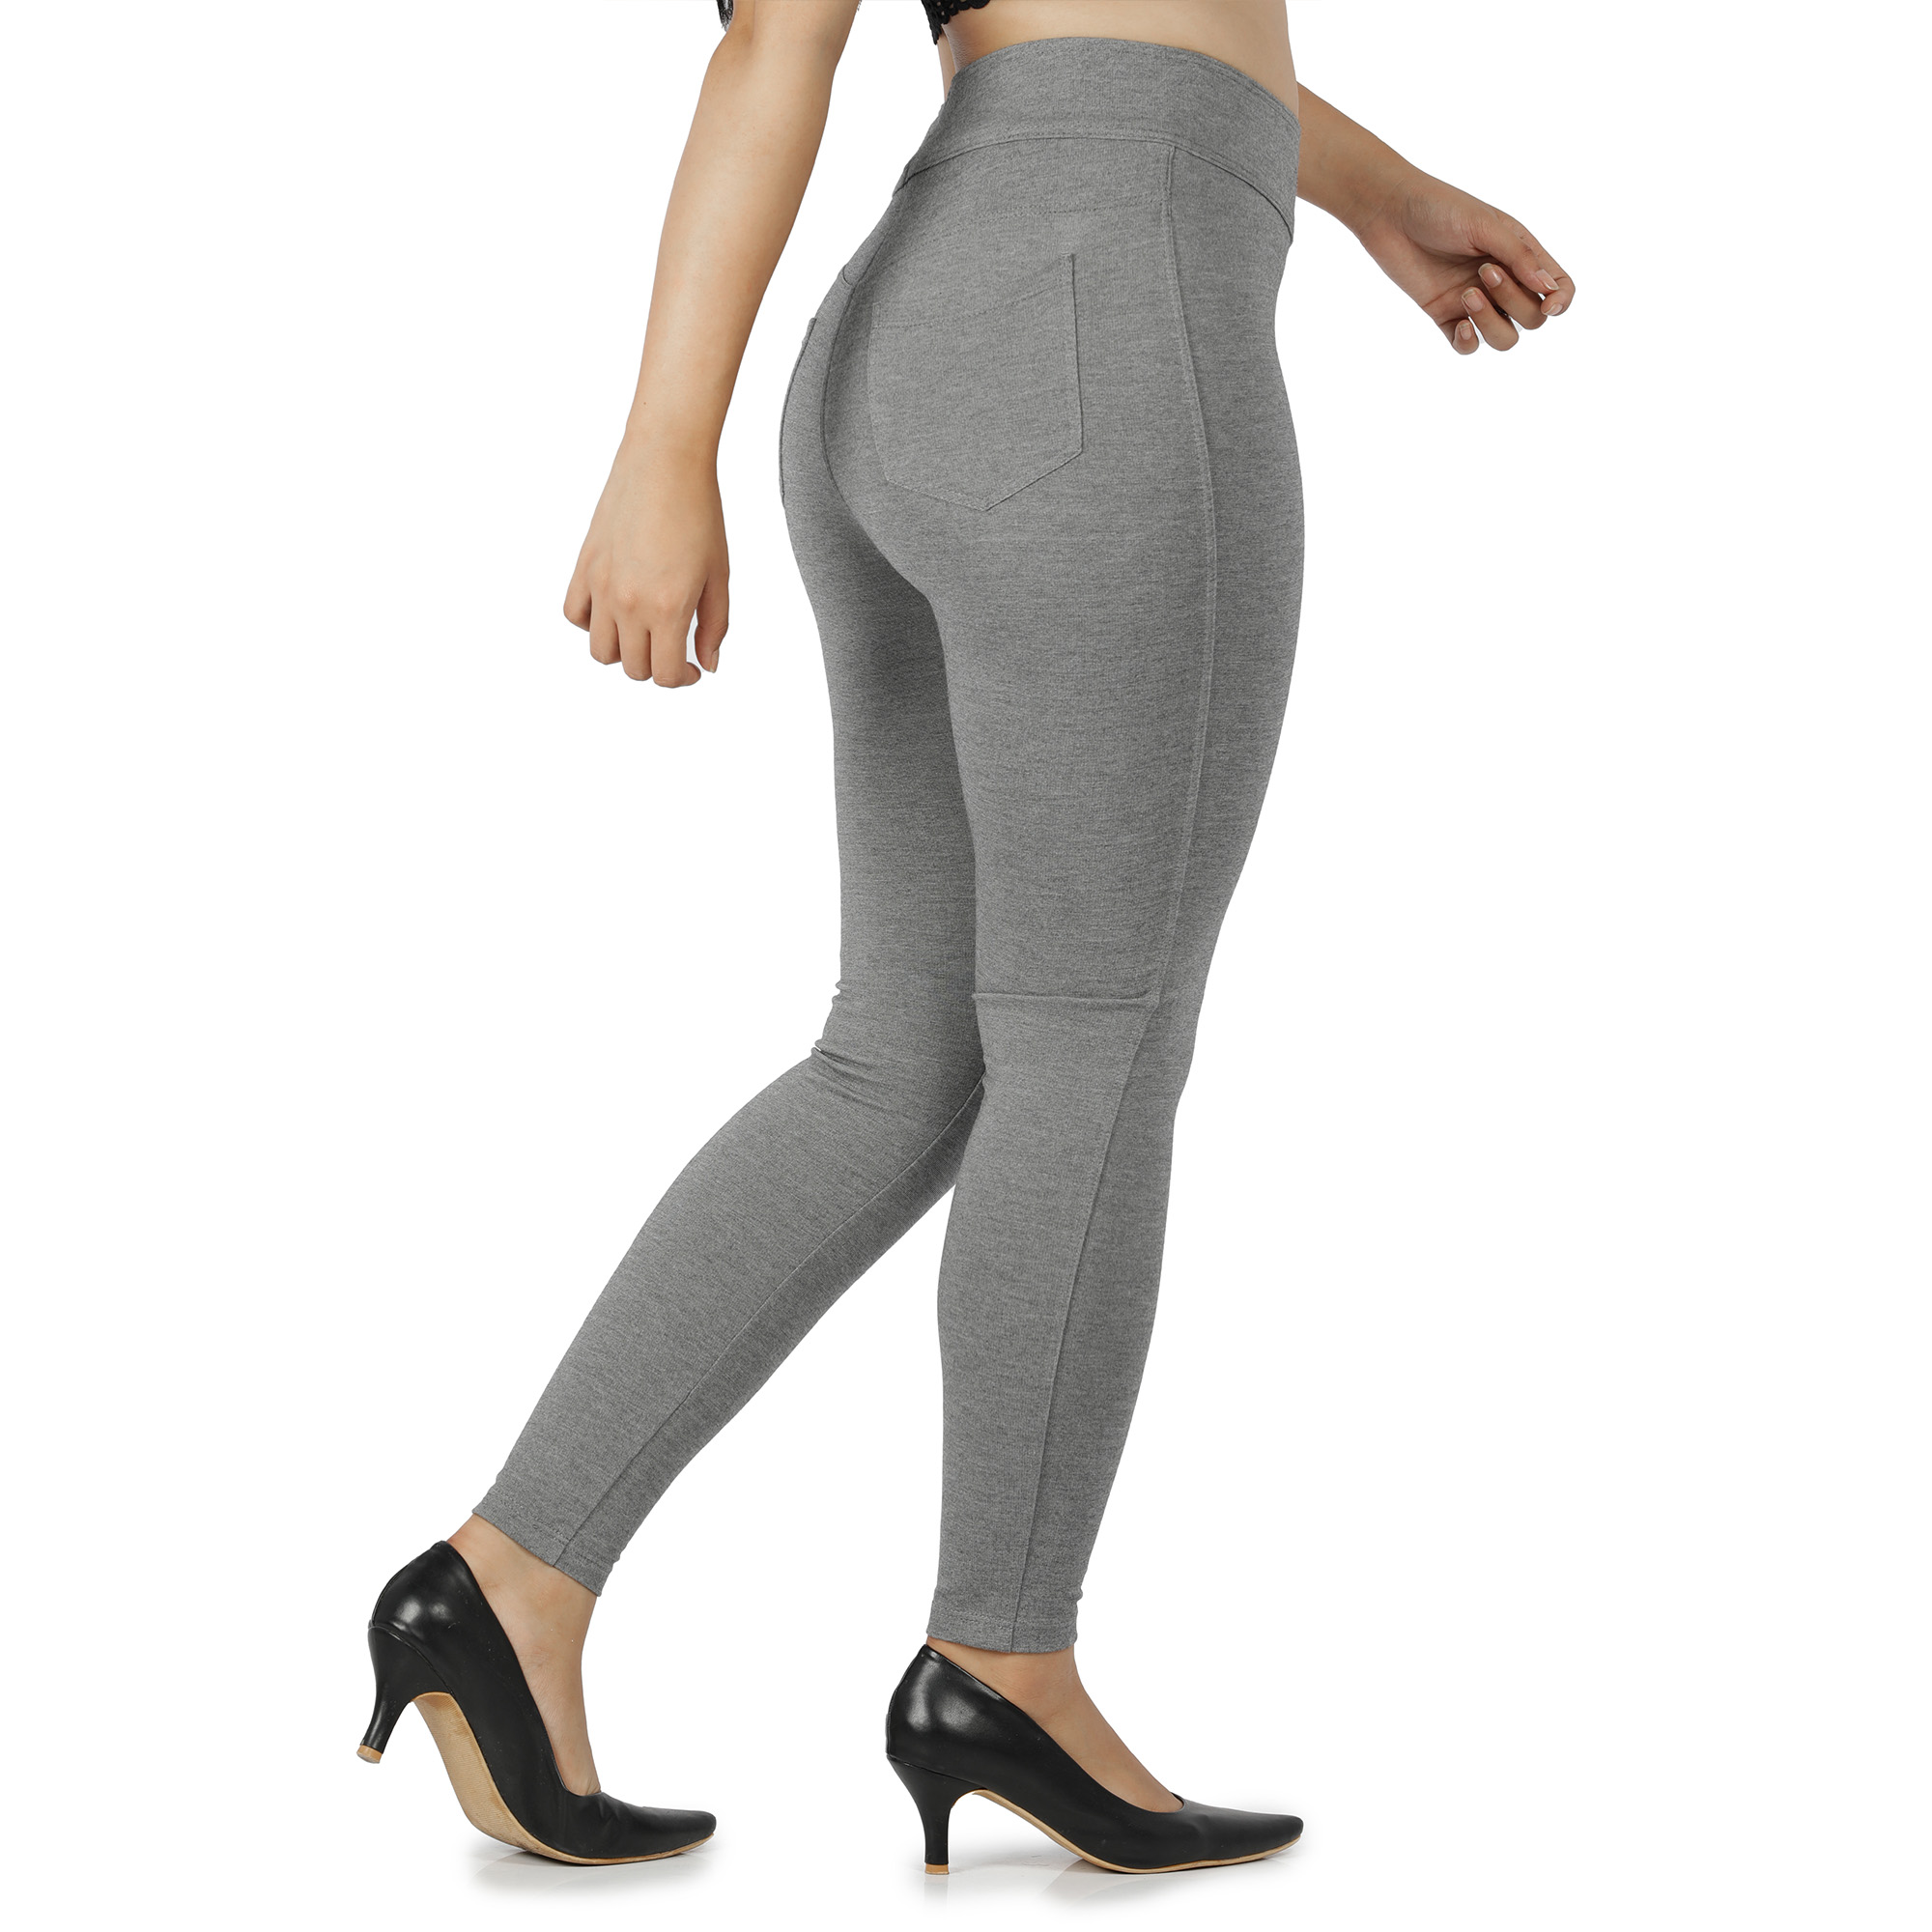 Grey jeggings for women Compression pant 2 back pockets - Belore Slims